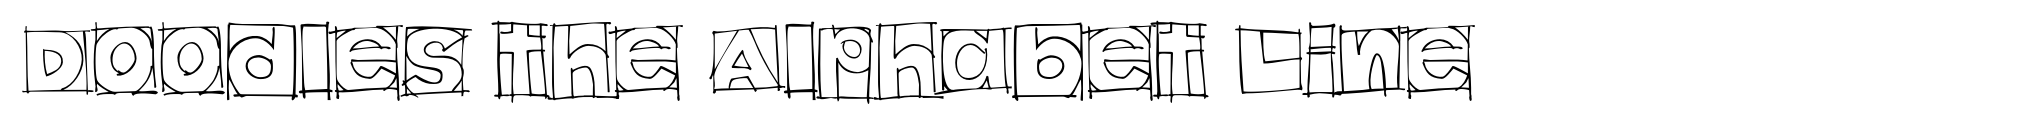 Doodles the Alphabet Line image